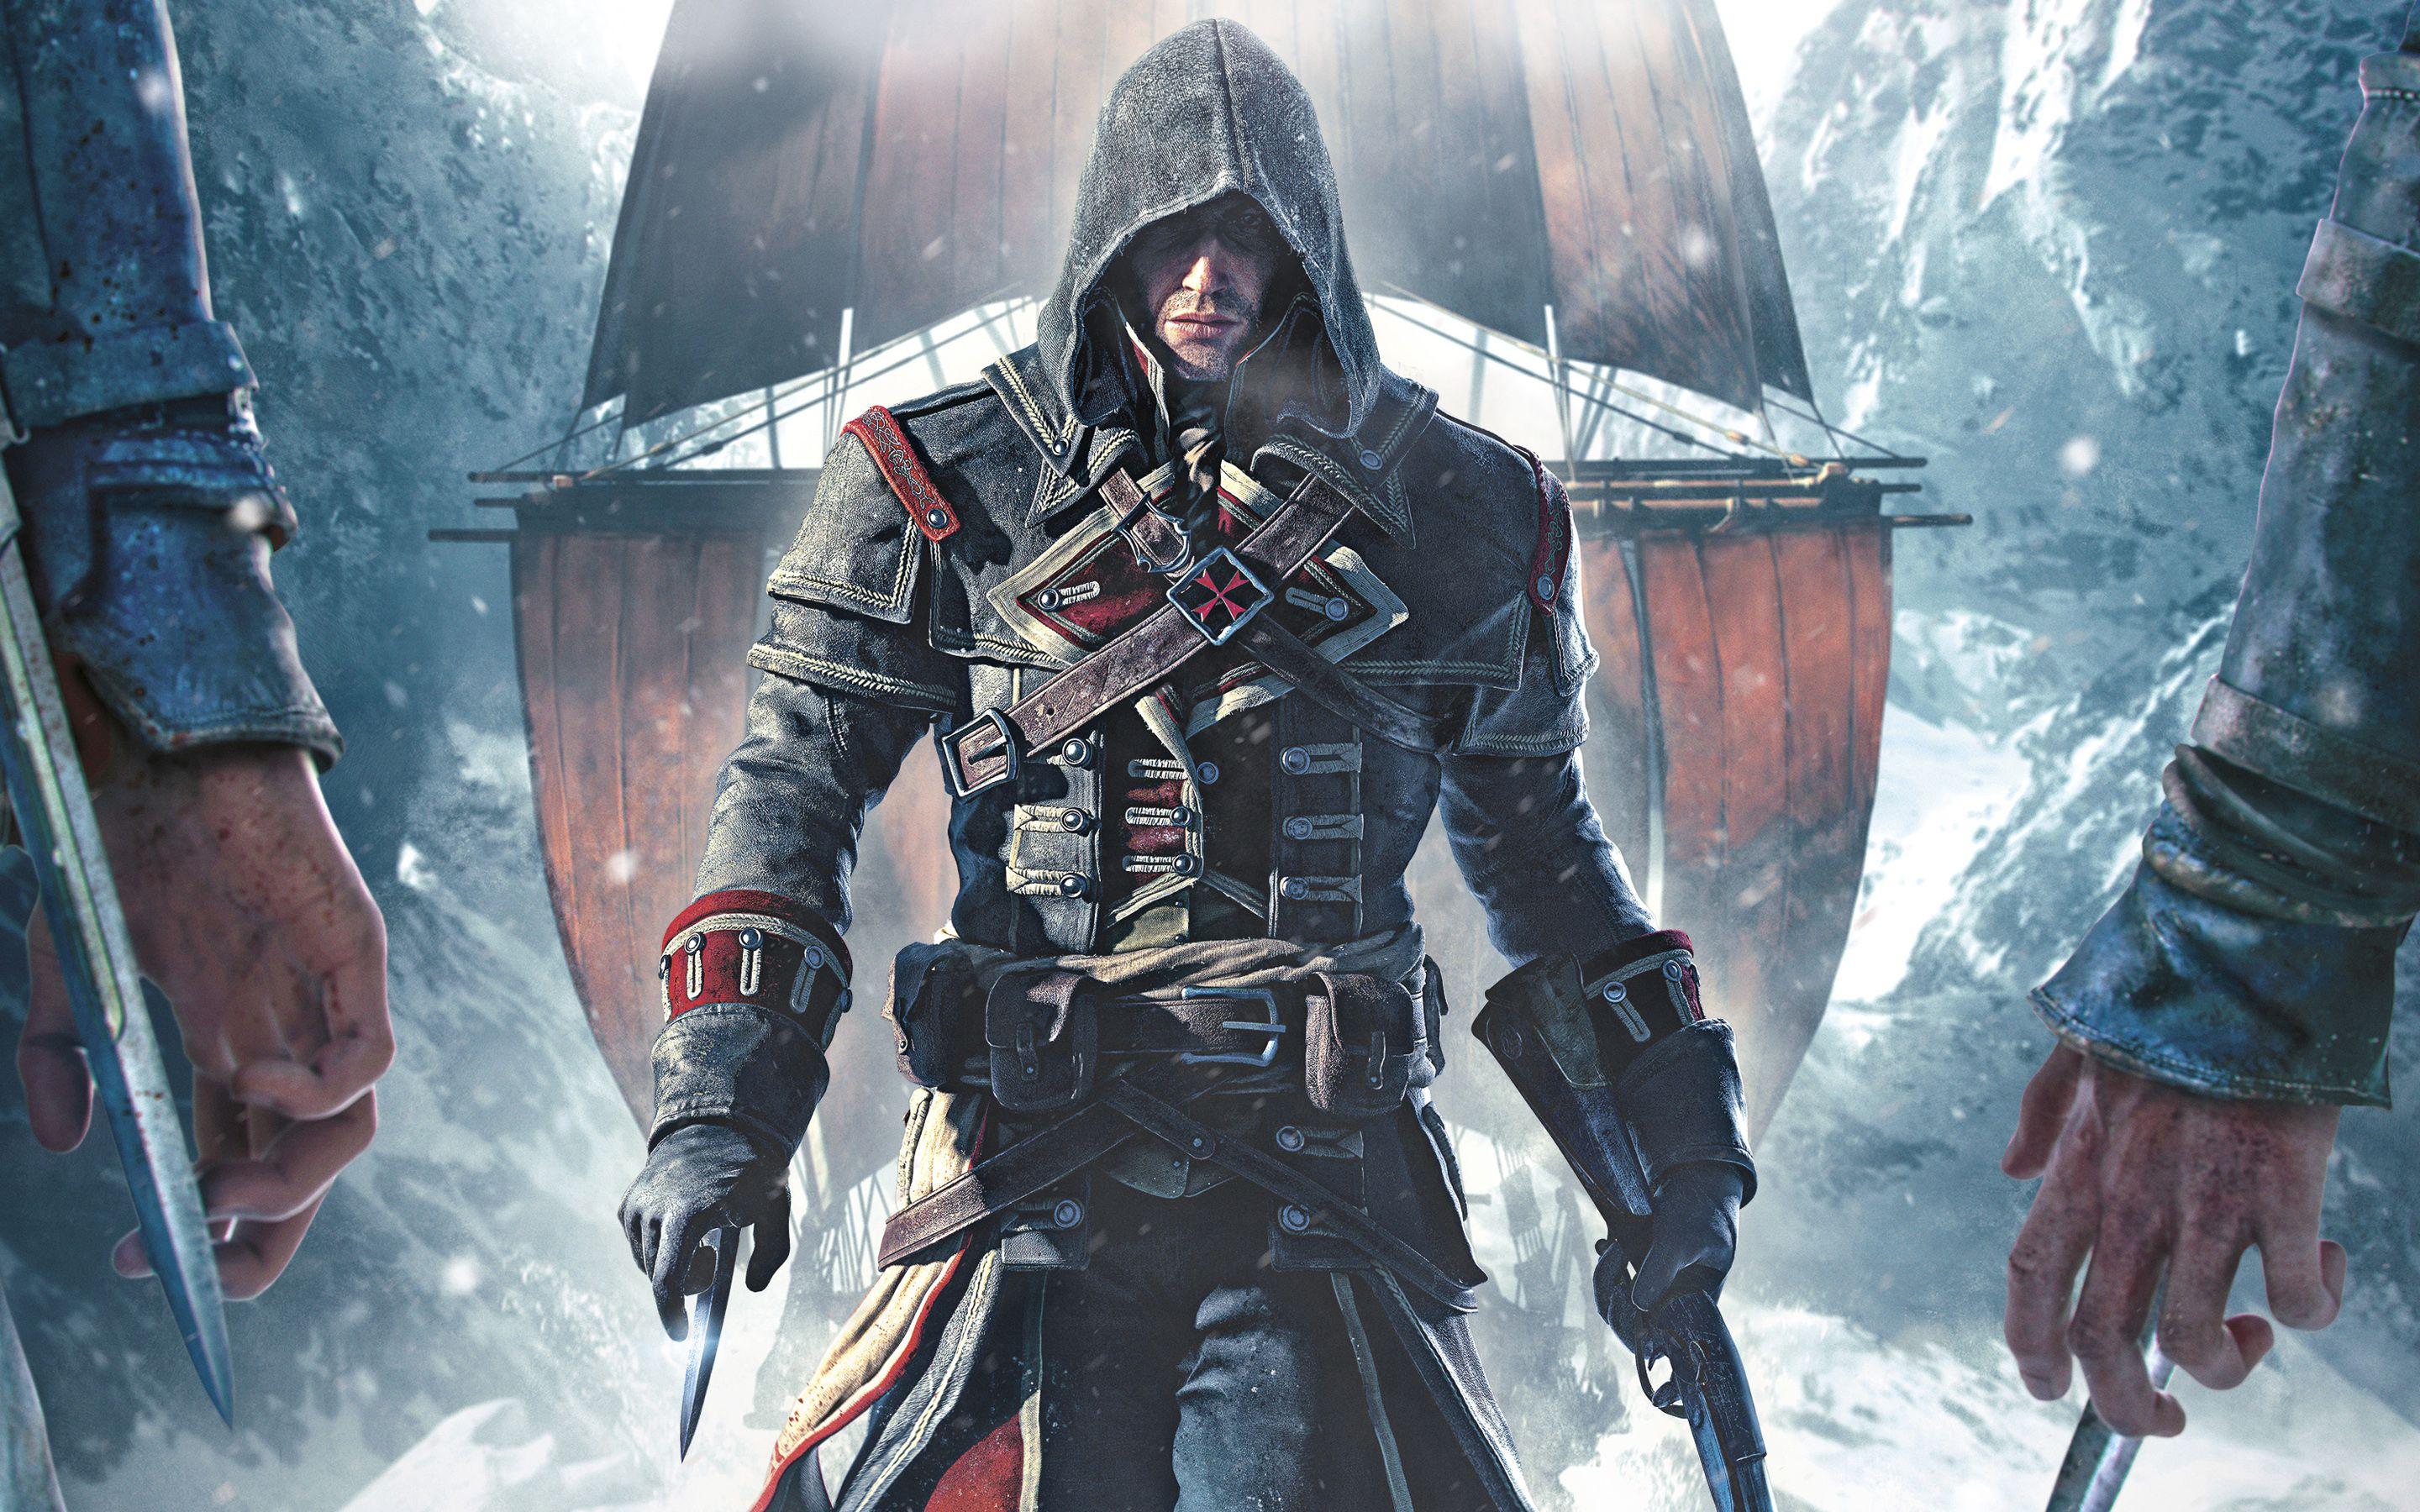 Assassin's Creed: Rogue HD Wallpaper